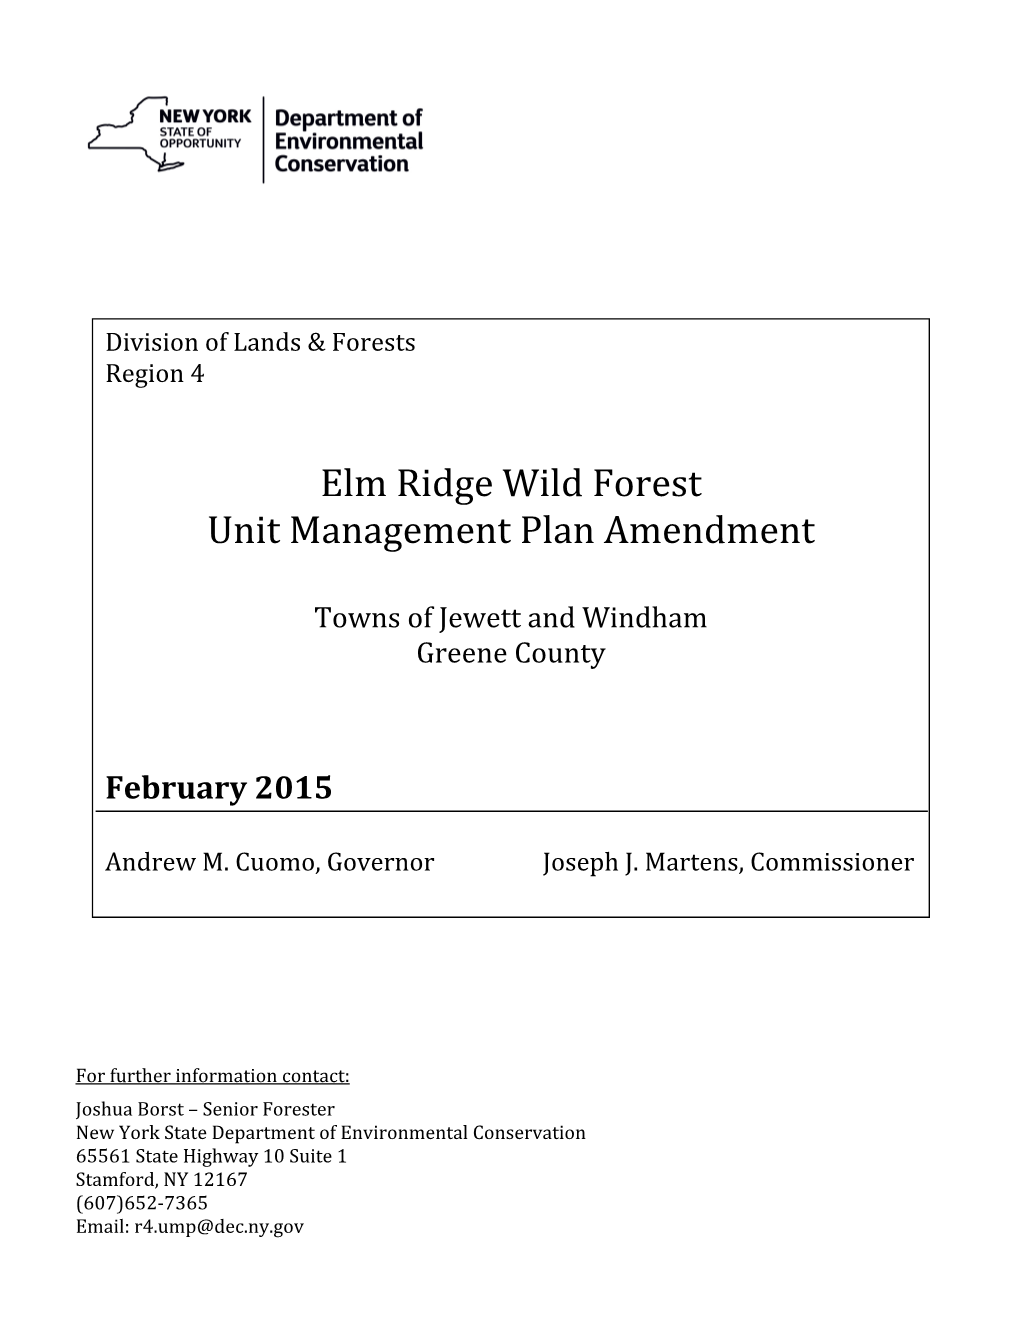 Elm Ridge Wild Forest Unit Management Plan Amendment